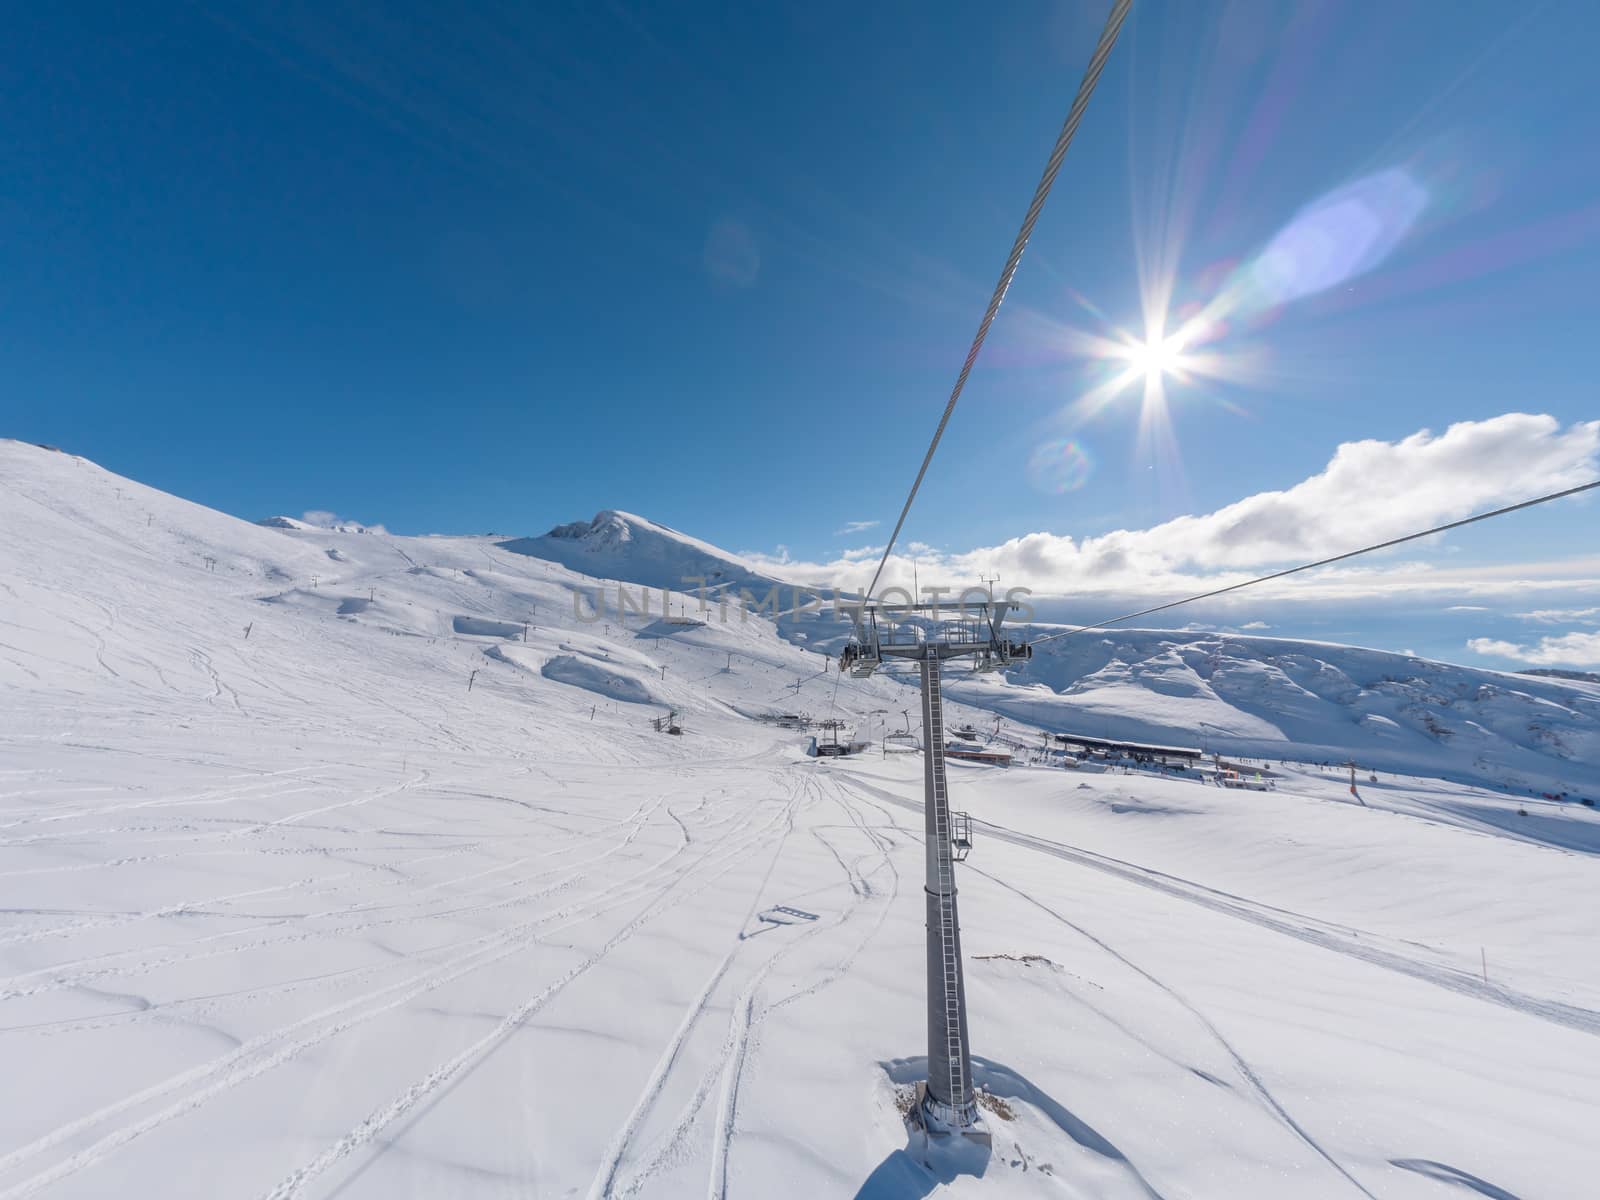 Ski lift in the slope of Parnassos ski resort in Greece